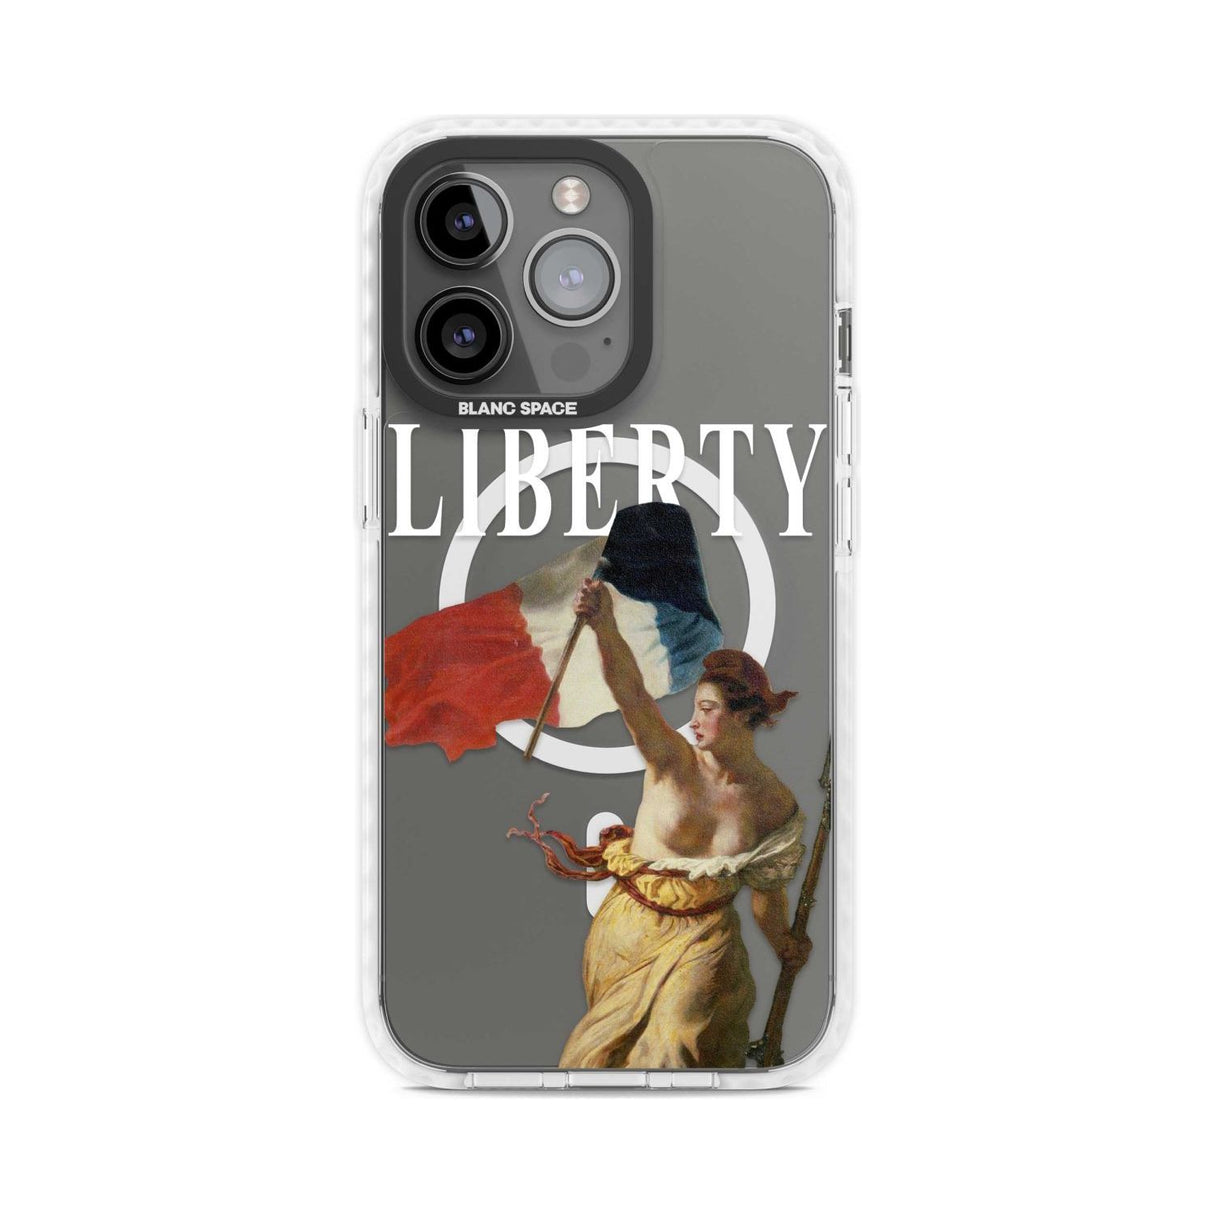 Liberty Phone Case iPhone 15 Pro Max / Magsafe Impact Case,iPhone 15 Pro / Magsafe Impact Case Blanc Space